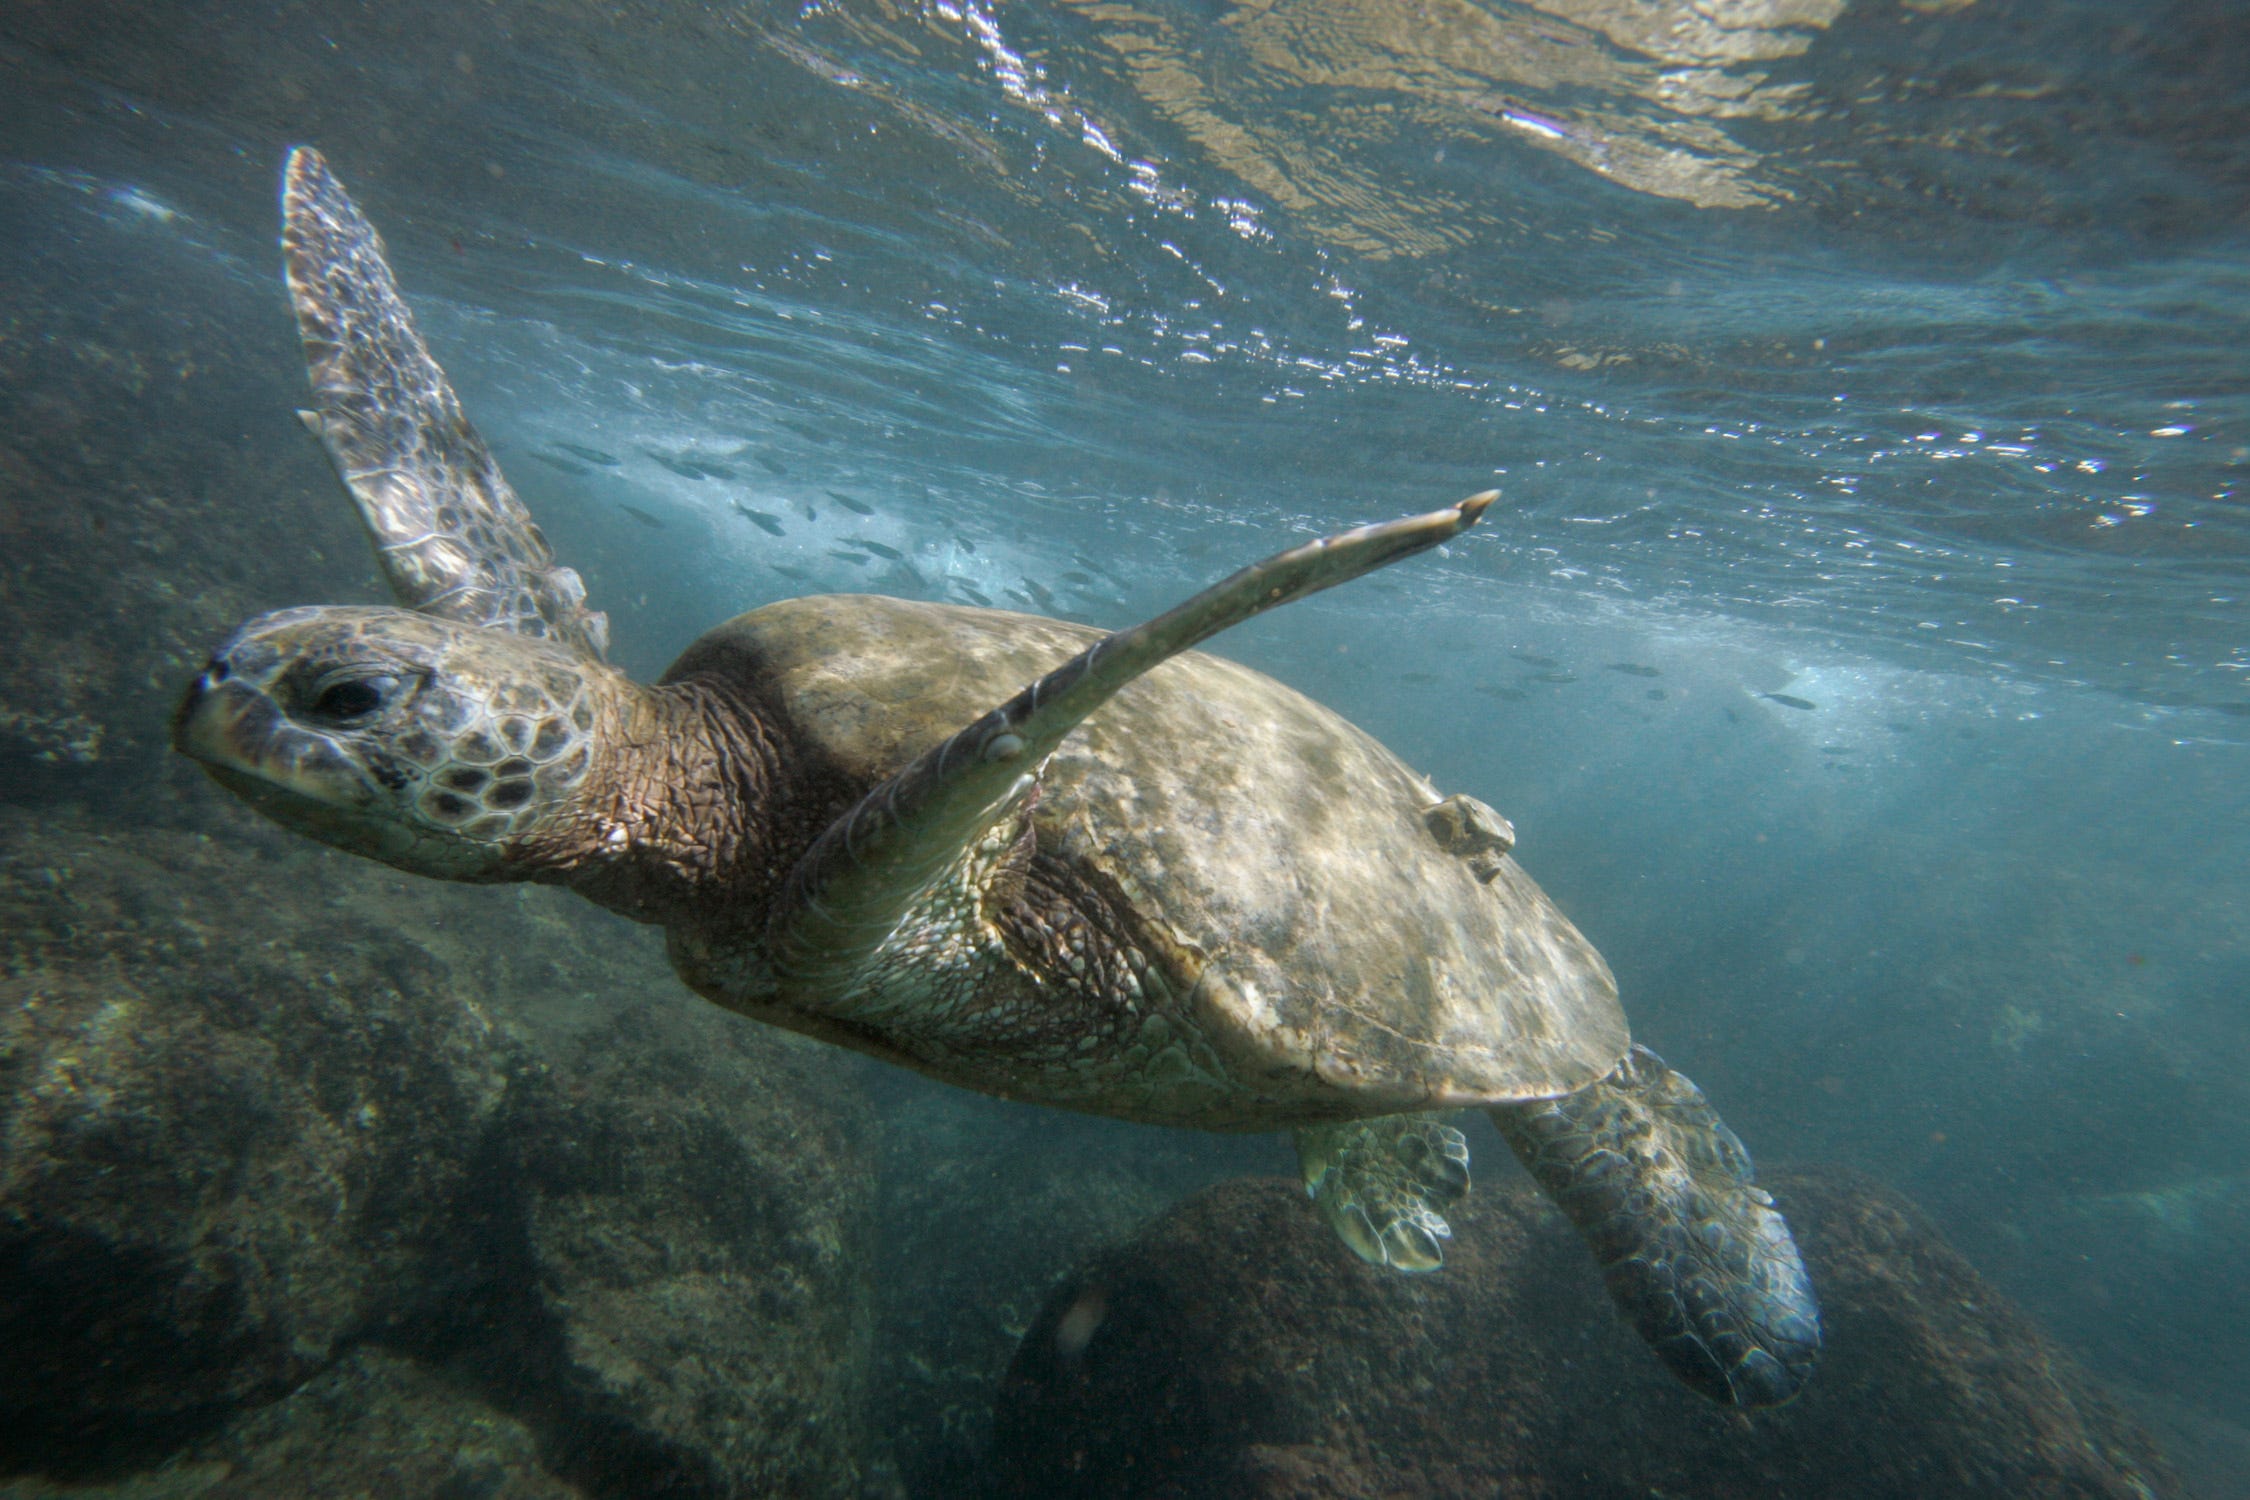 Grüne Meeresschildkröte schwimmt unter Wasser im klaren, blauen Meer mit moosigen Felsen darunter und Fischen im Hintergrund